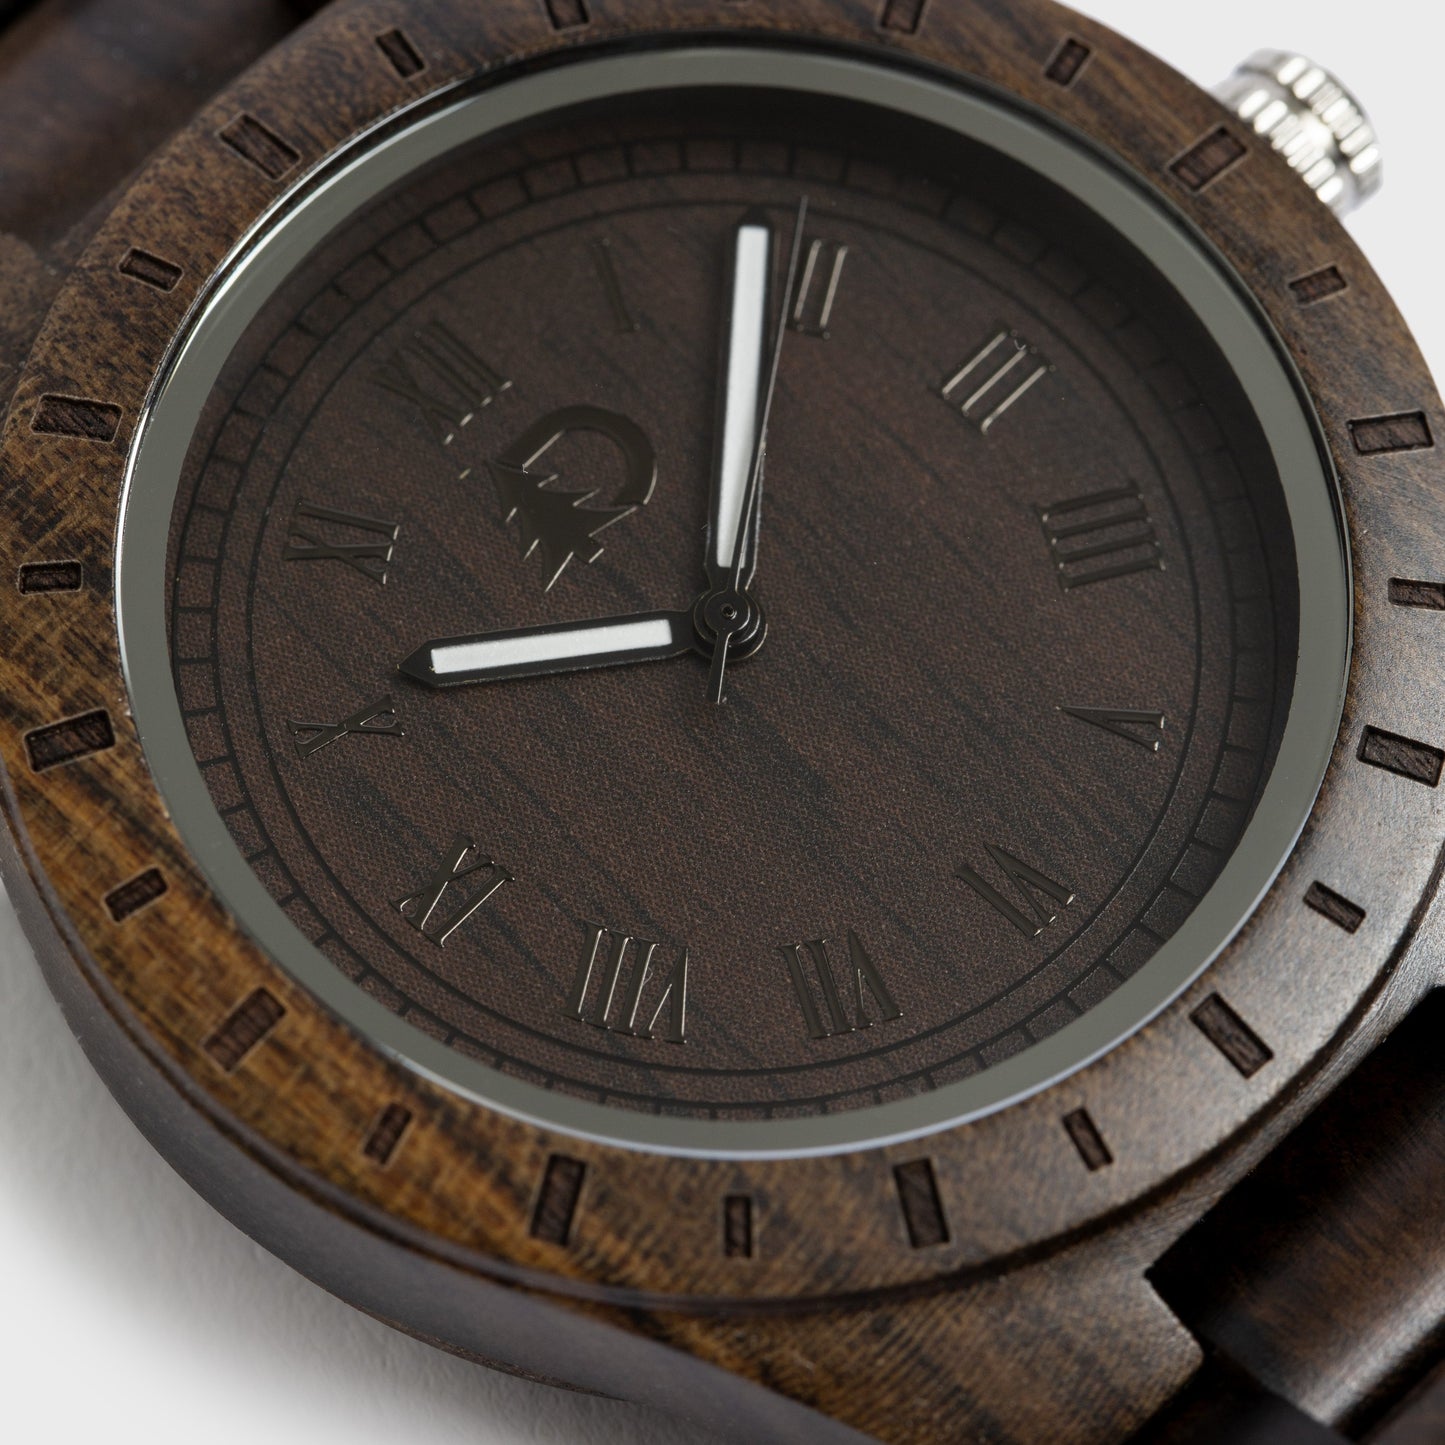 Men's Stylish Wood Watch